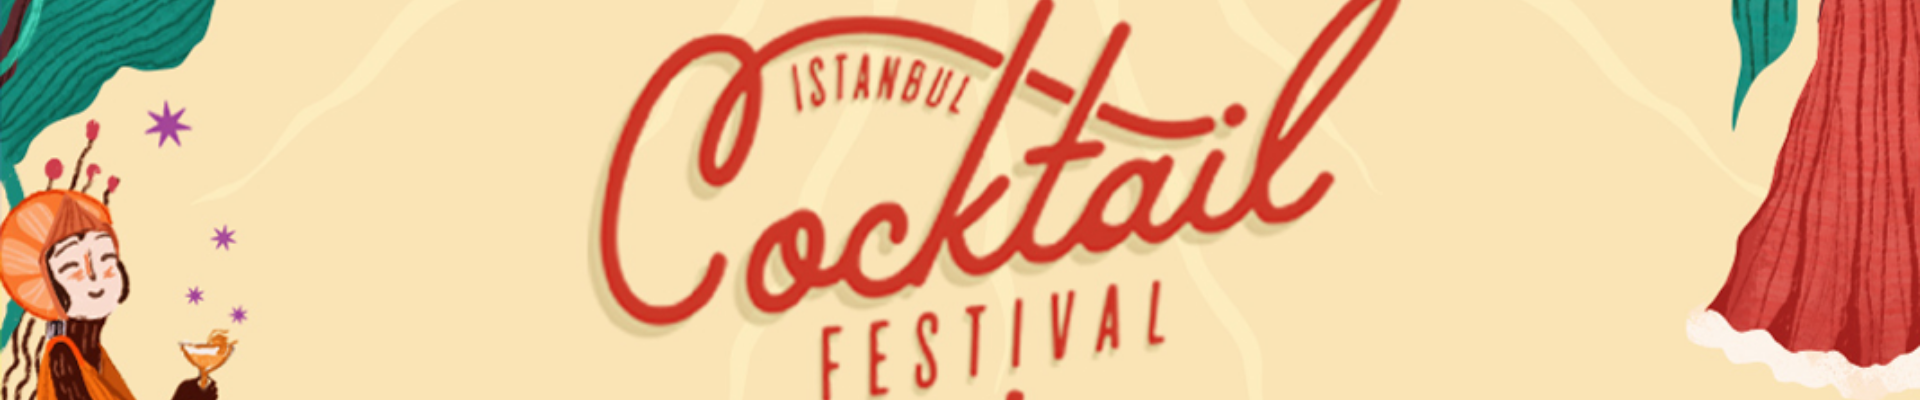 İstanbul Cocktail Festival Biletleri